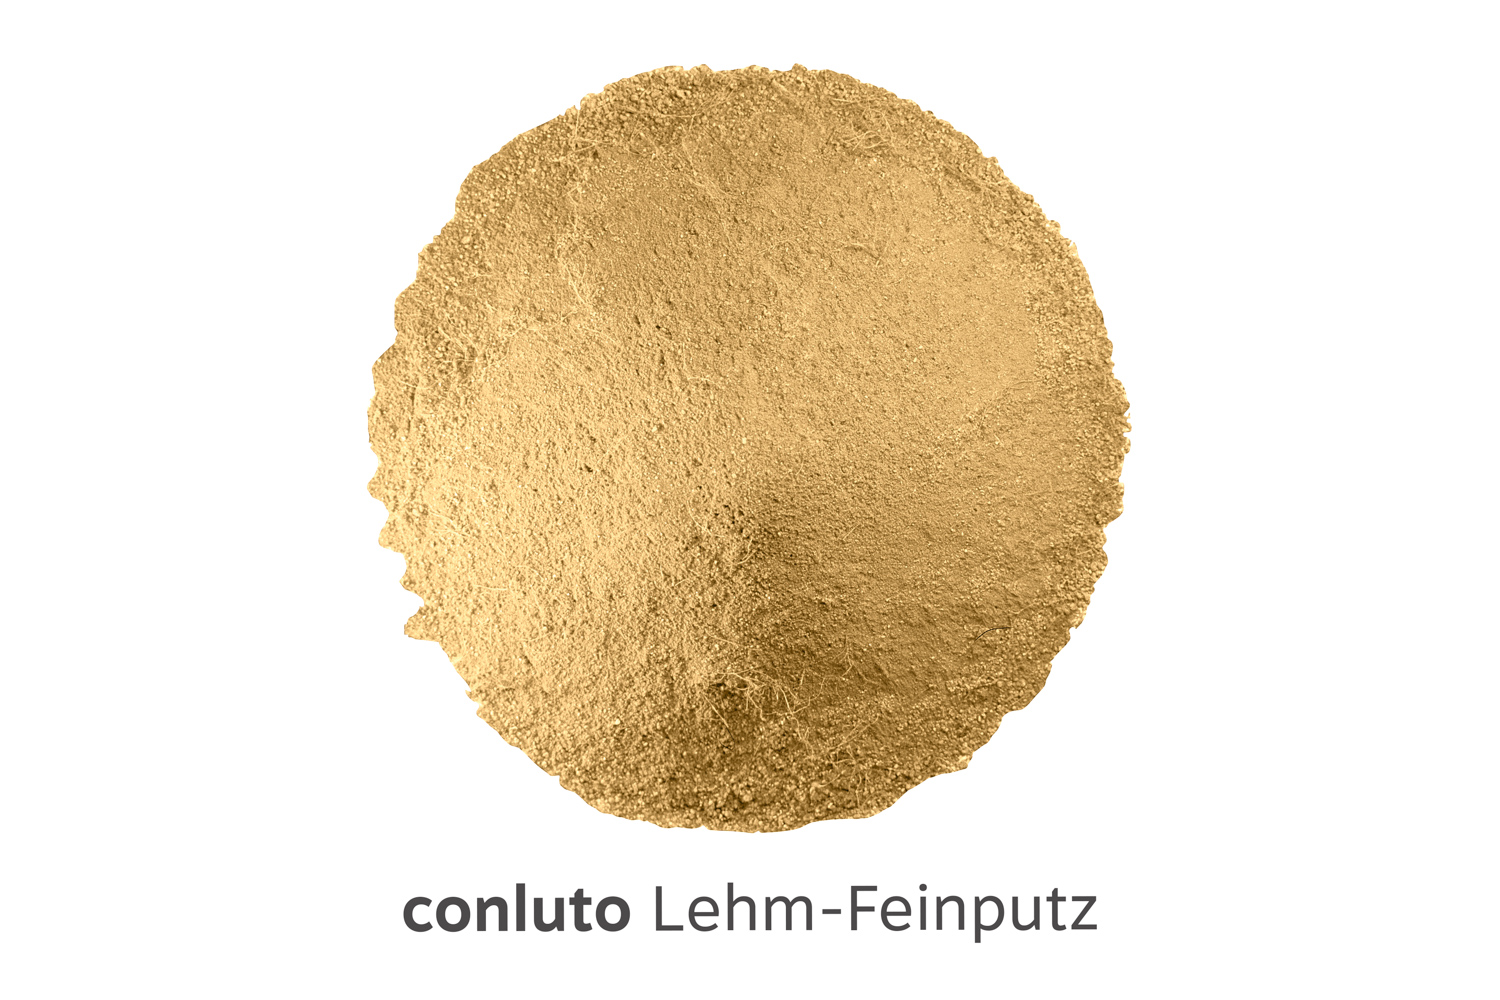 conluto Lehm-Feinputz